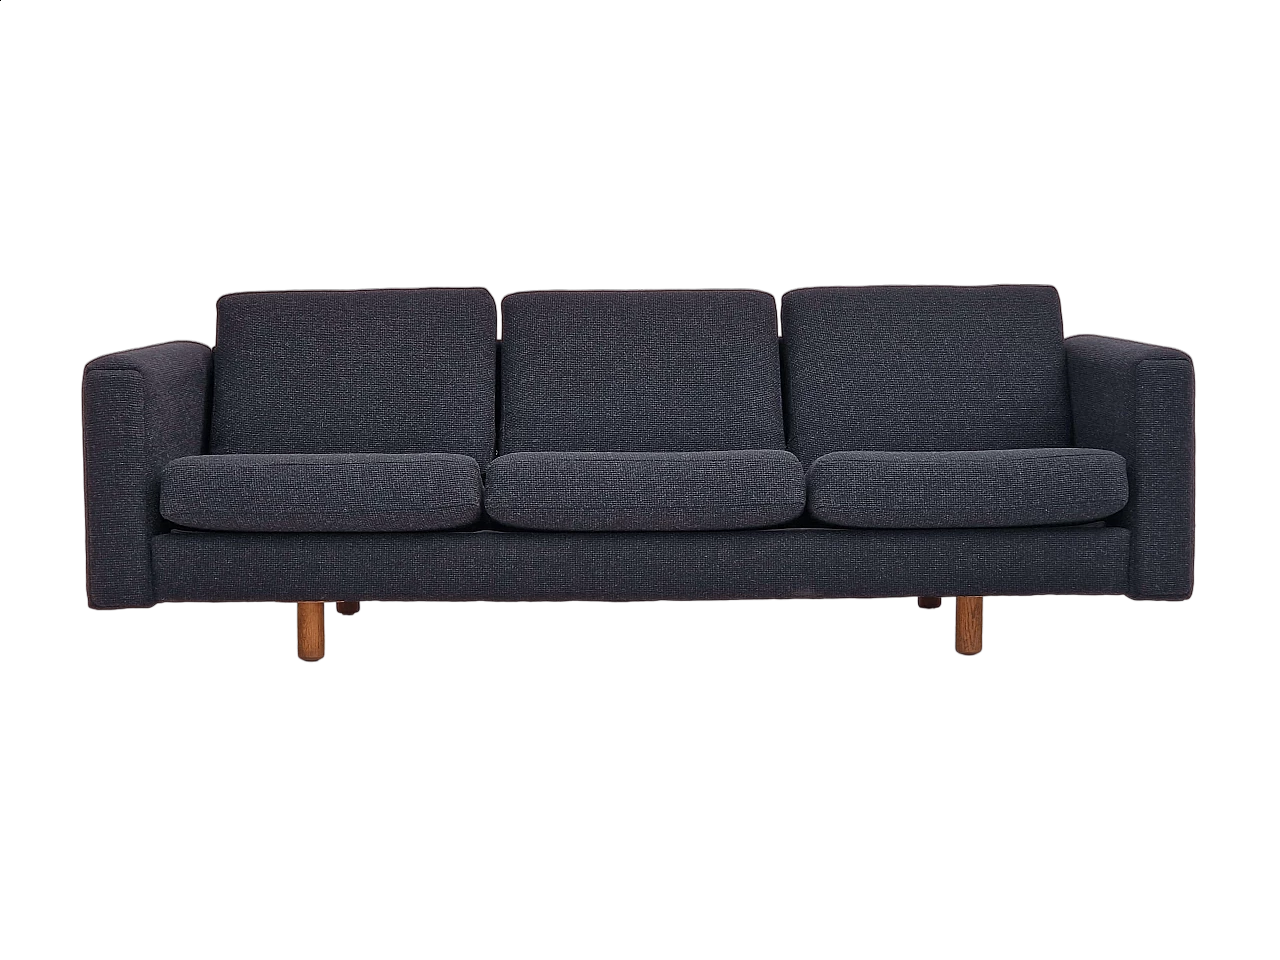 GE300 sofa by Hans J. Wegner for Getama, 1960s 16